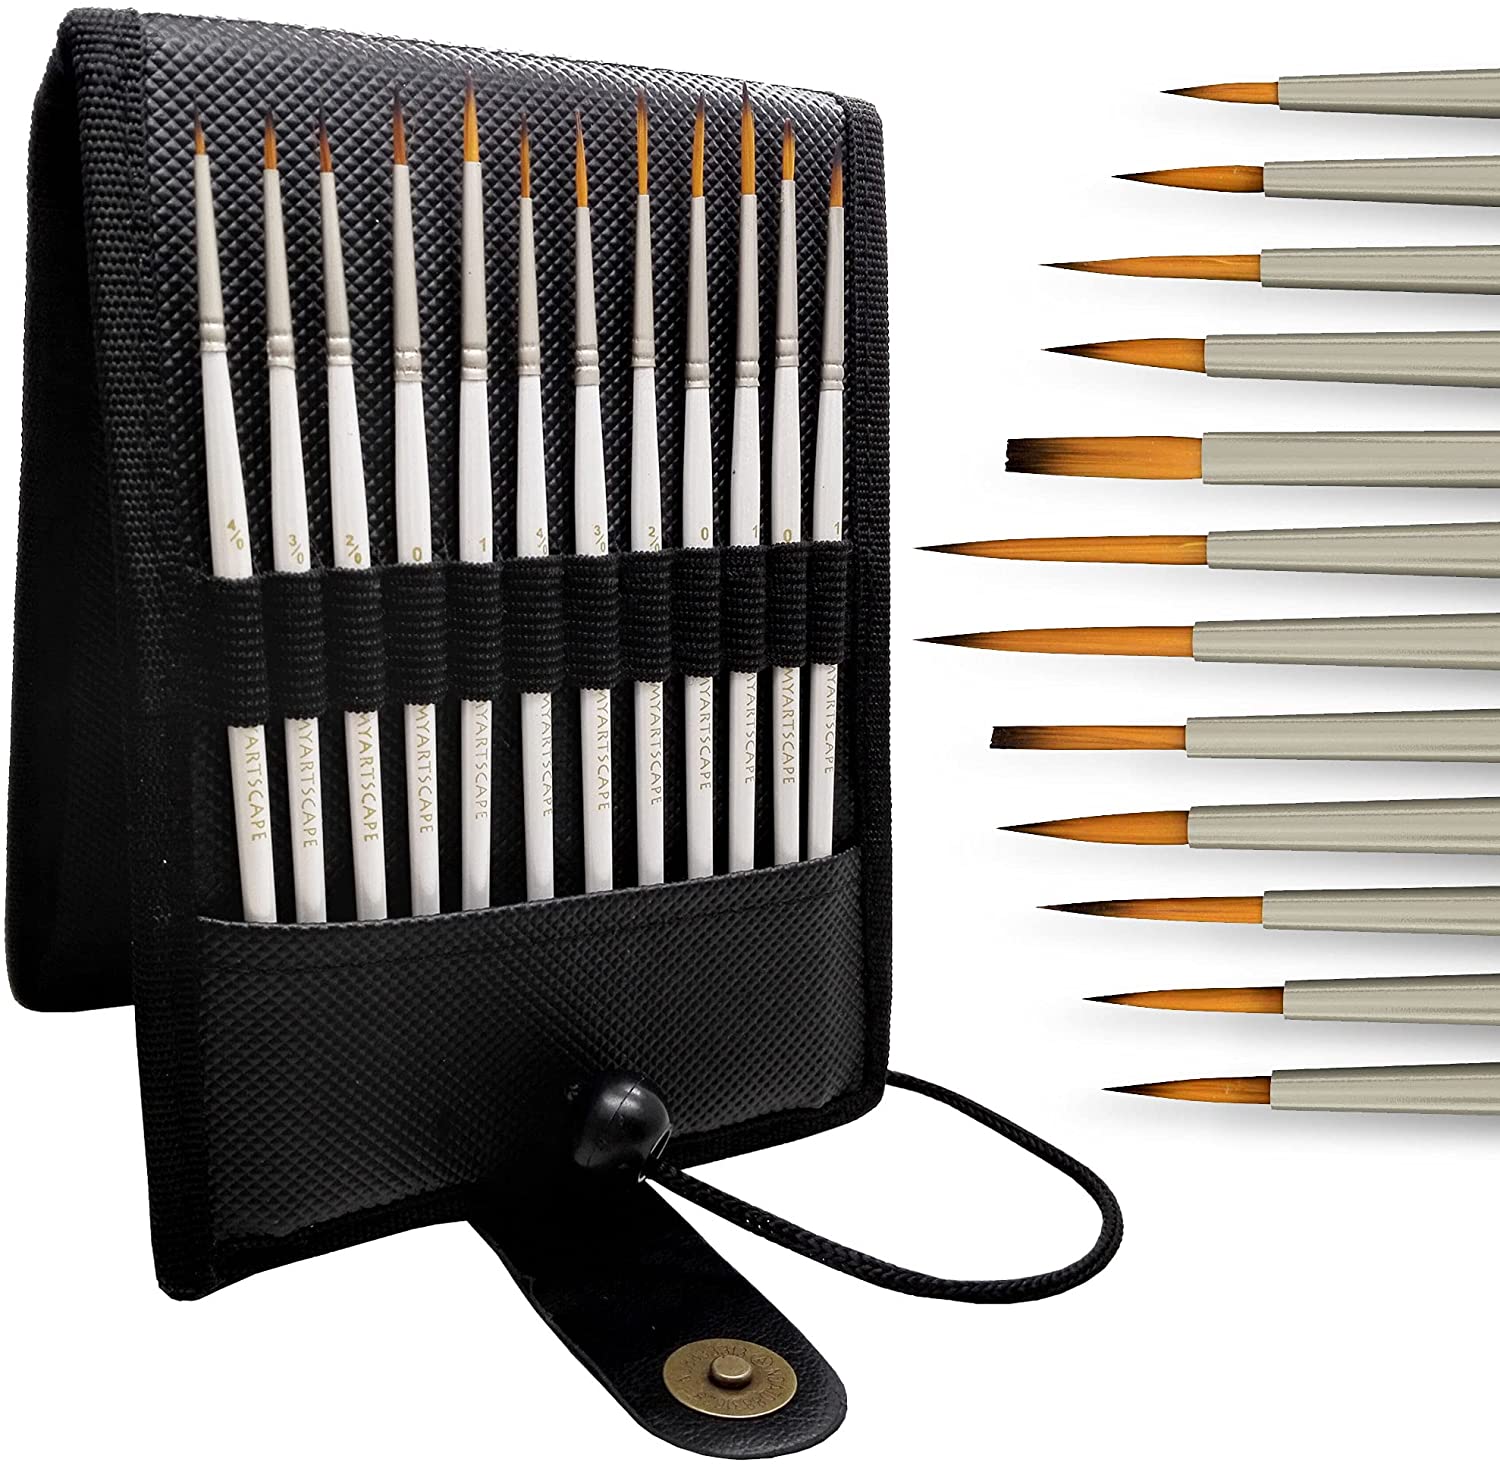 Miniature Paint Brushes with Holder, Set of 12 Art Brushes – MyArtscape